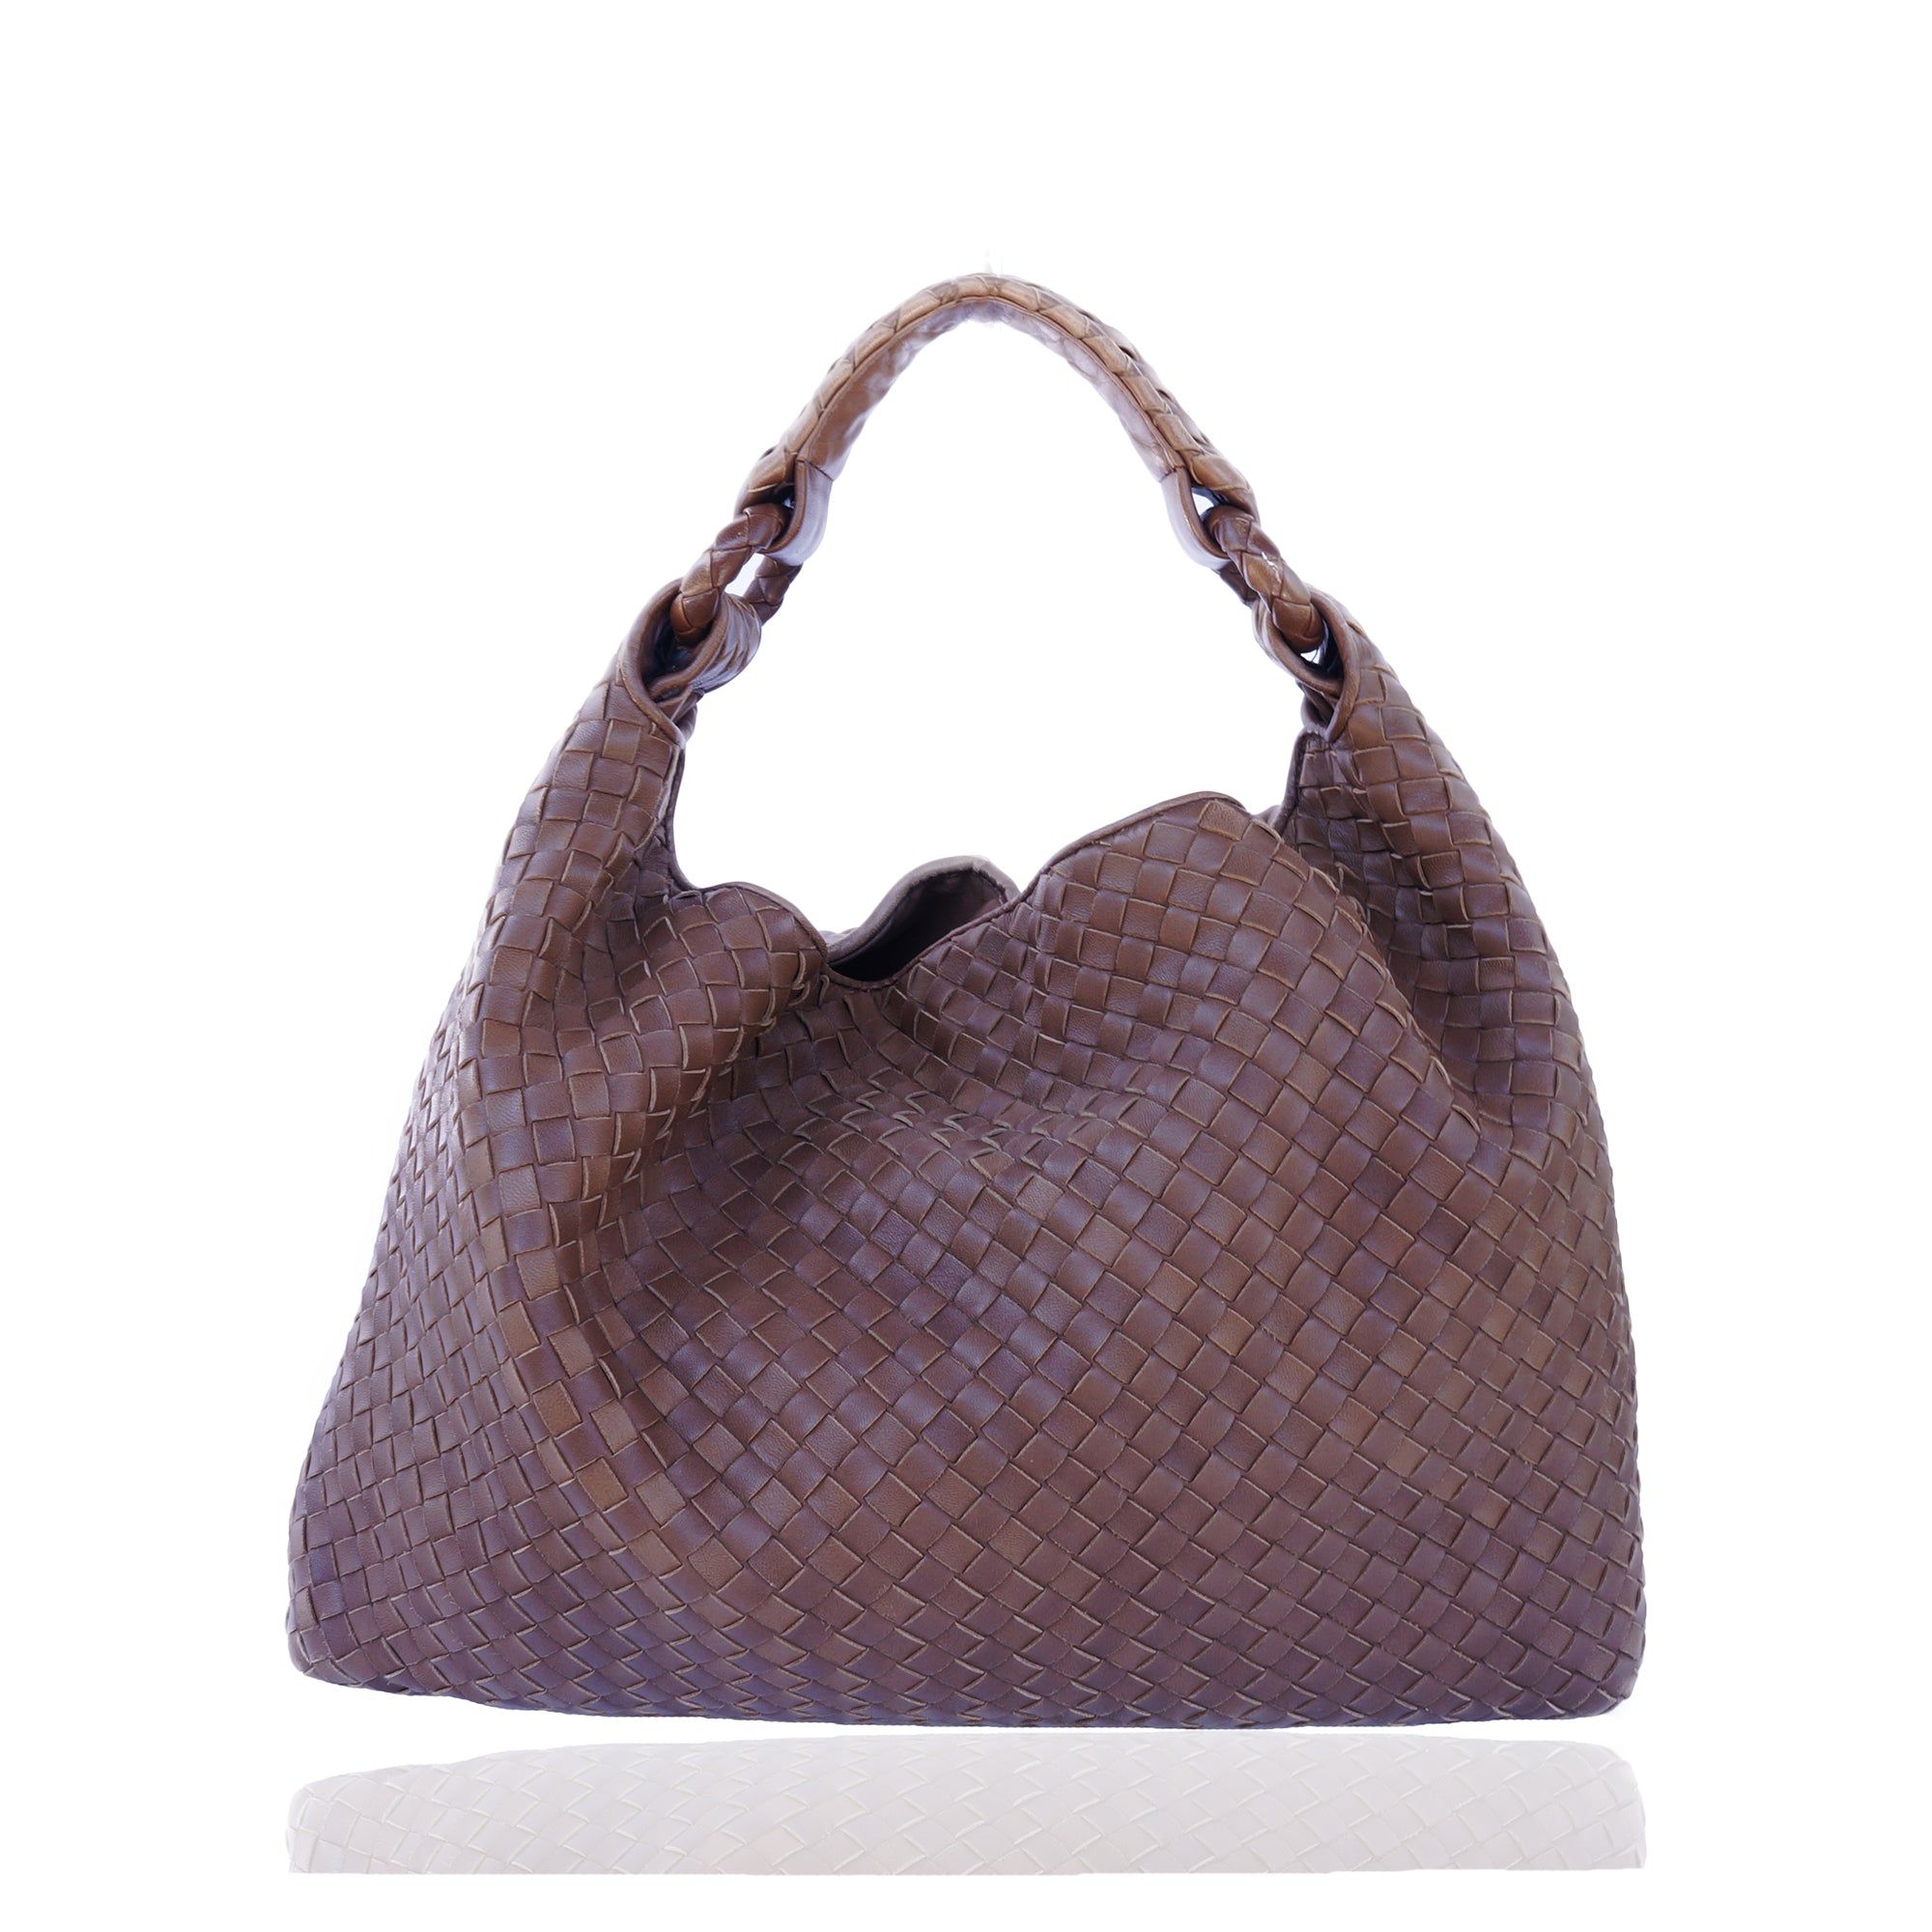 Bottega Veneta Intrecciato Medium Loop Tote - Brown Hobos, Handbags -  BOT190383